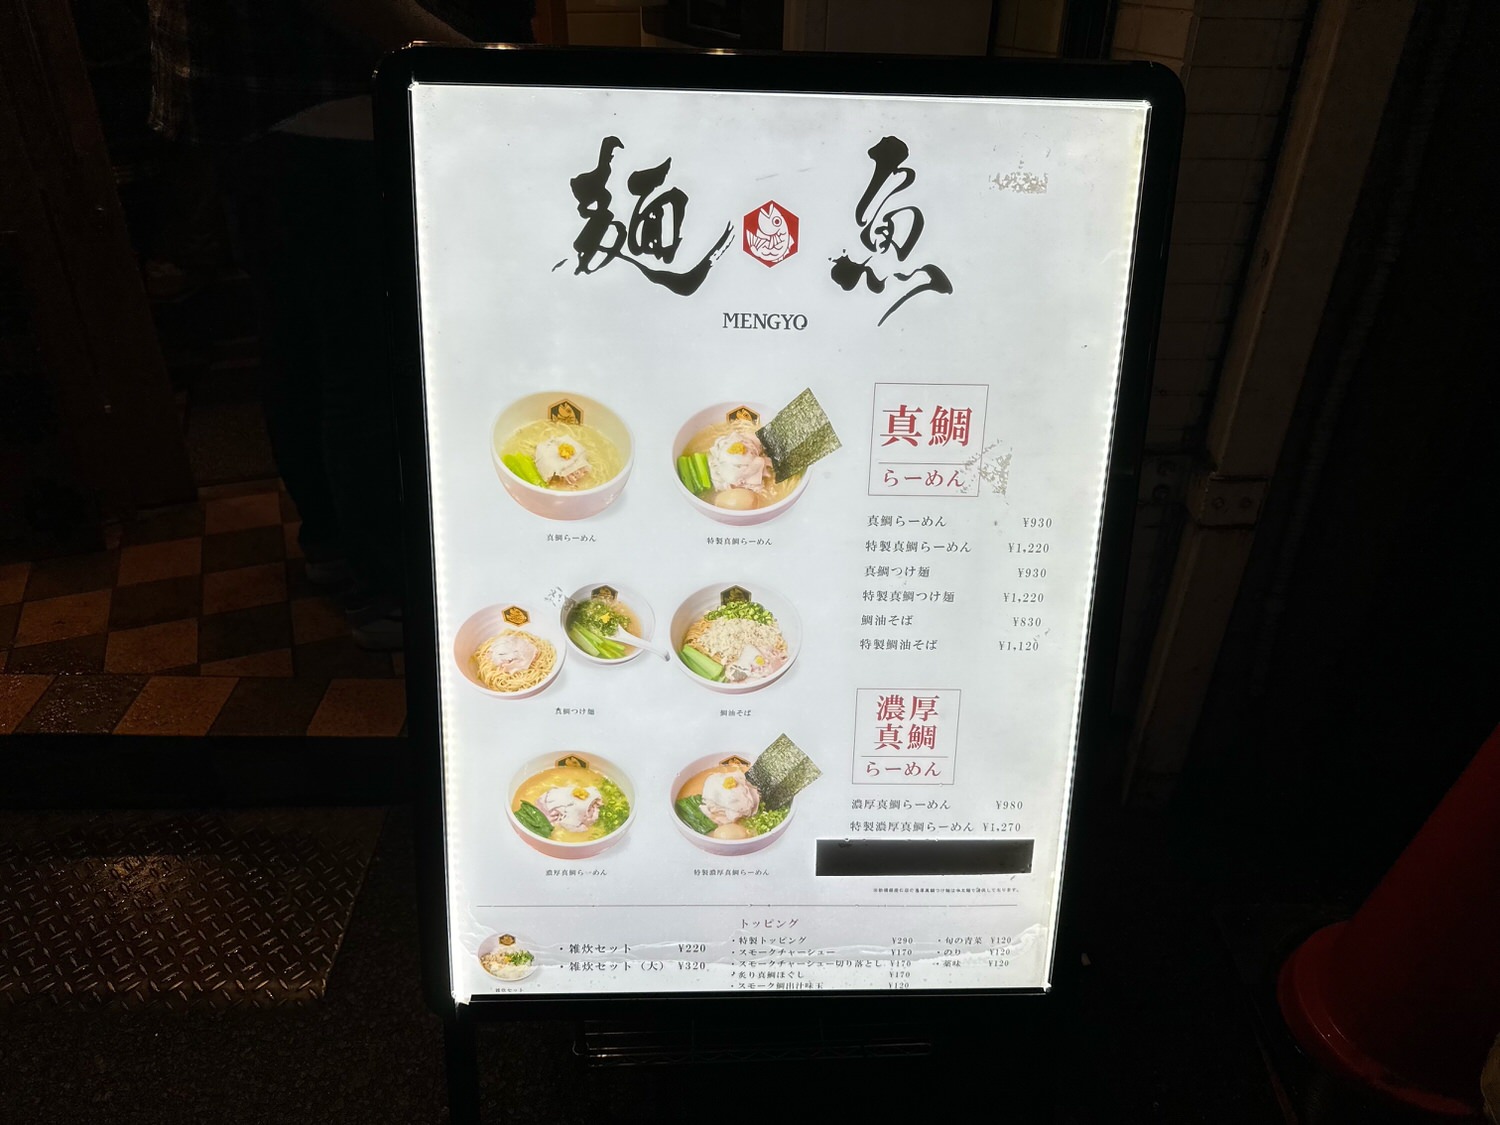 真鯛らーめん 麺魚 新橋店 010 05